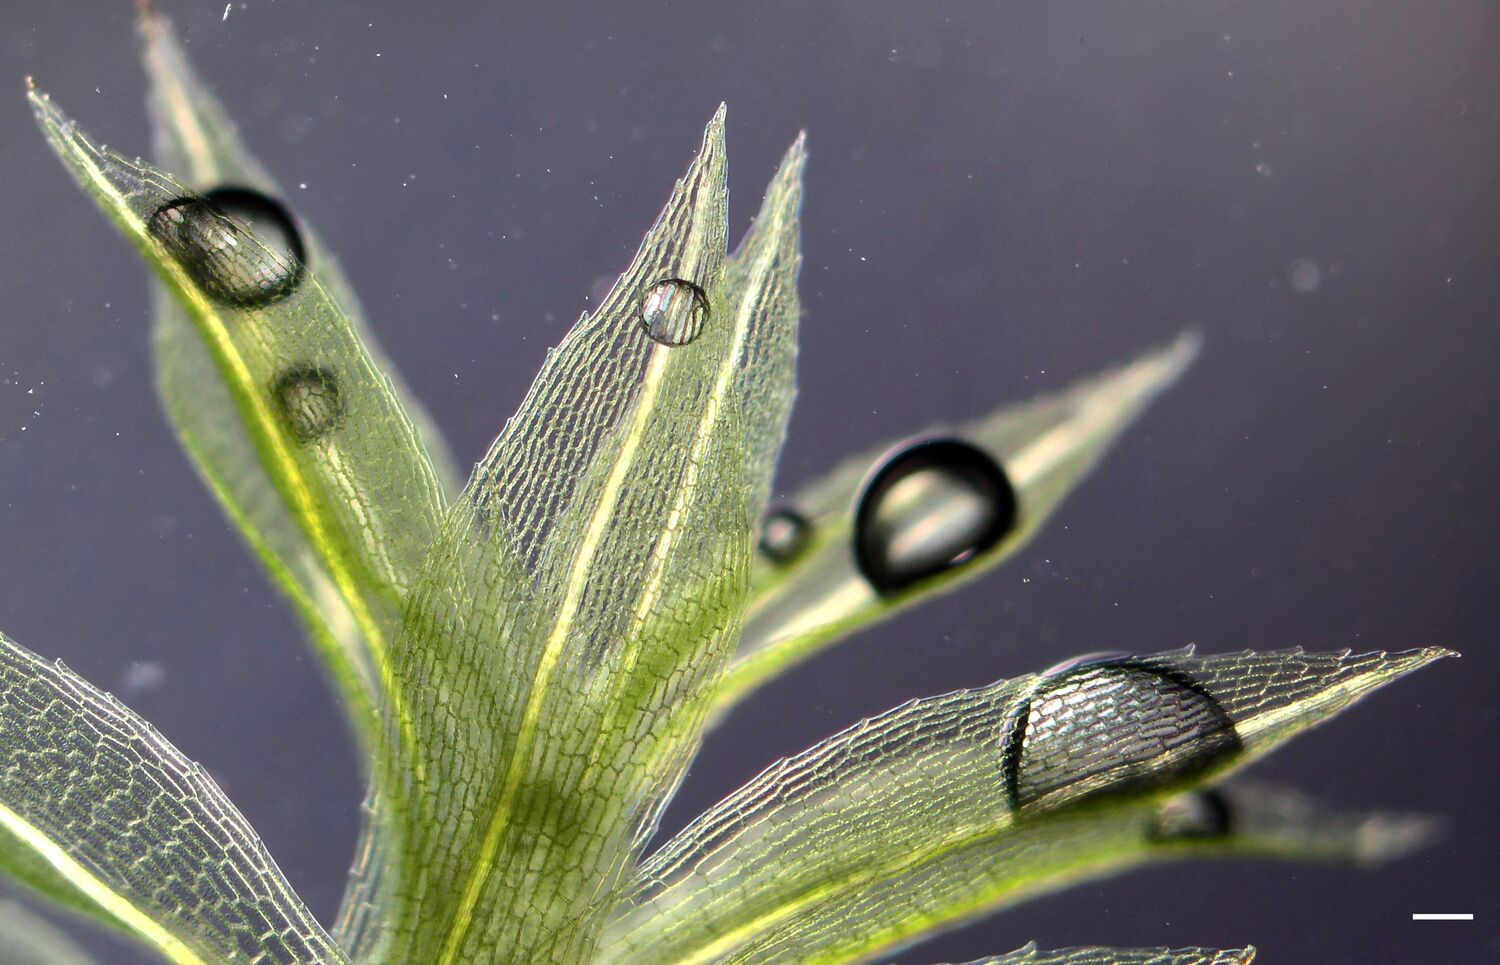 Mikroskopisches Bild des Mooses Physcomitrium patens, das als Modellorganismus für die Evolution der Pflanzen erforscht wird (Maßstab: 1 mm)